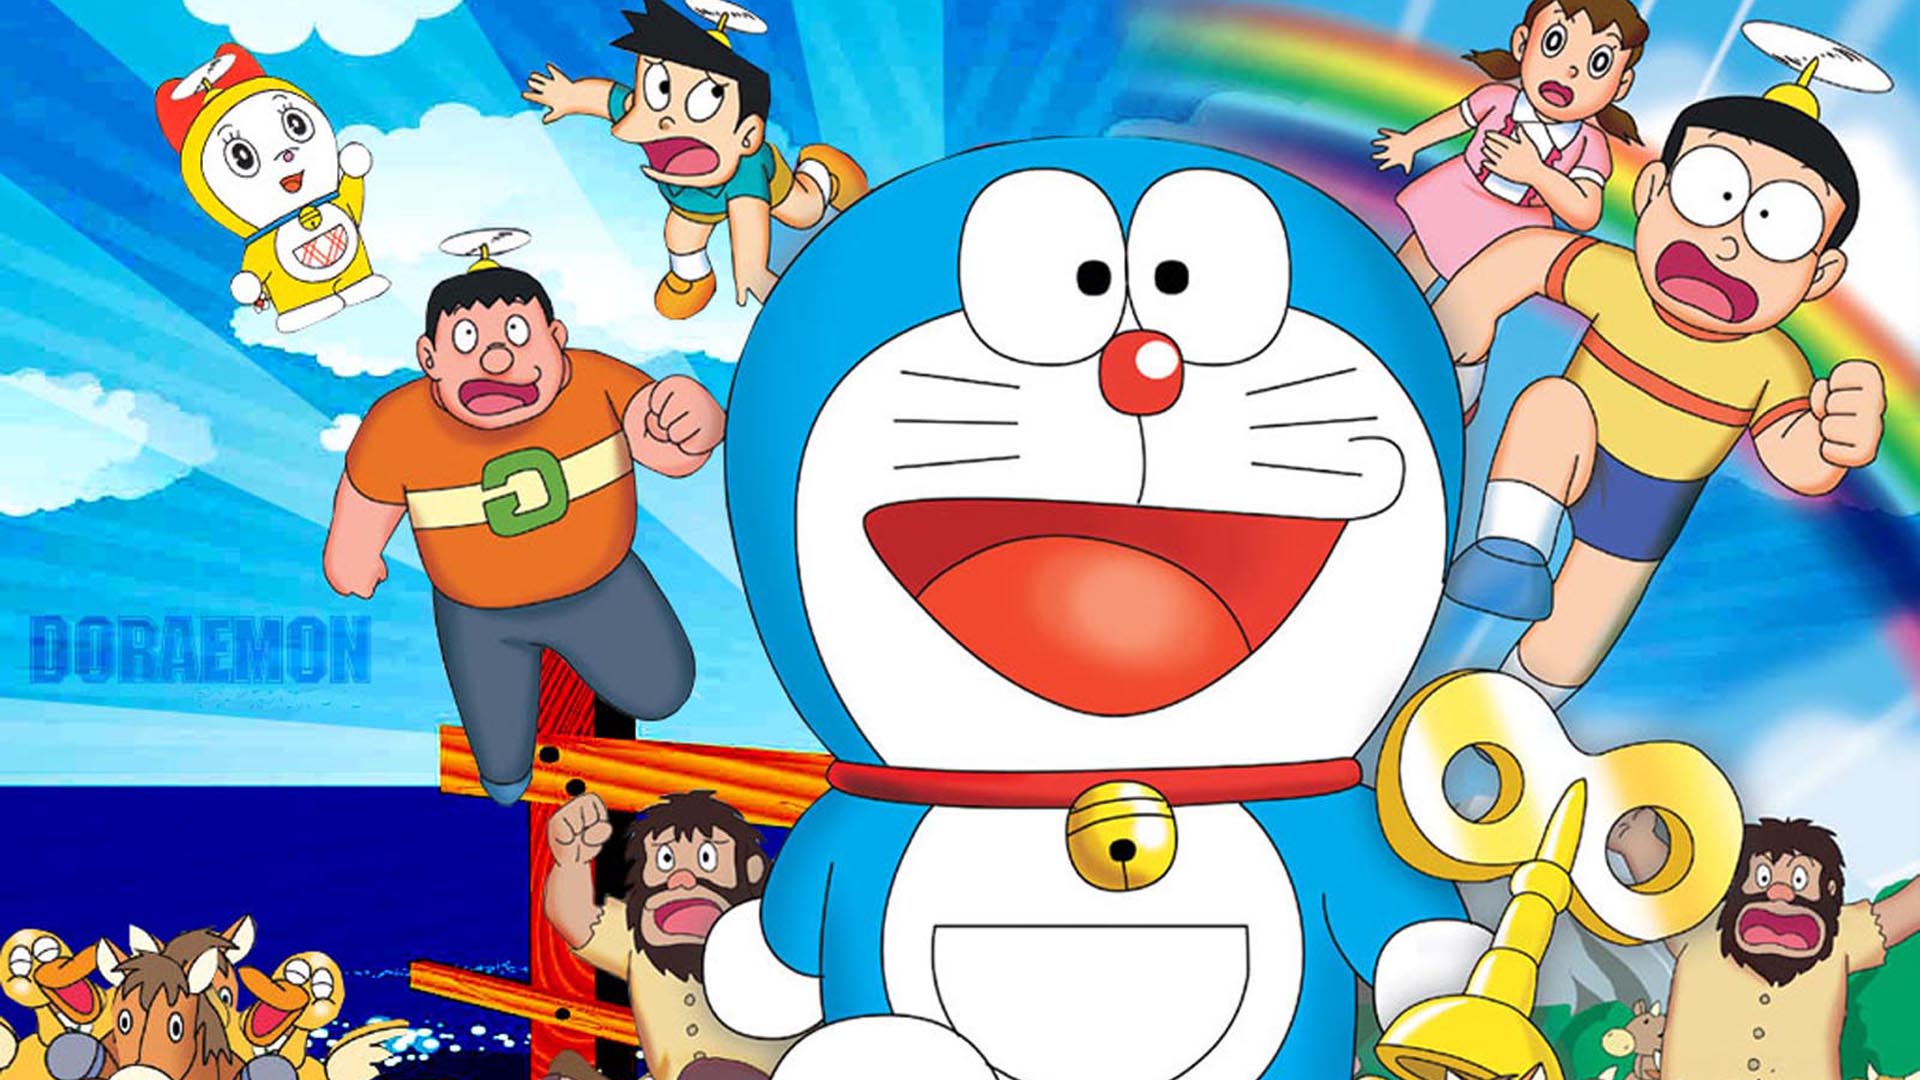 Download Gambar Doraemon Untuk Wallpaper Kampung Wallpaper